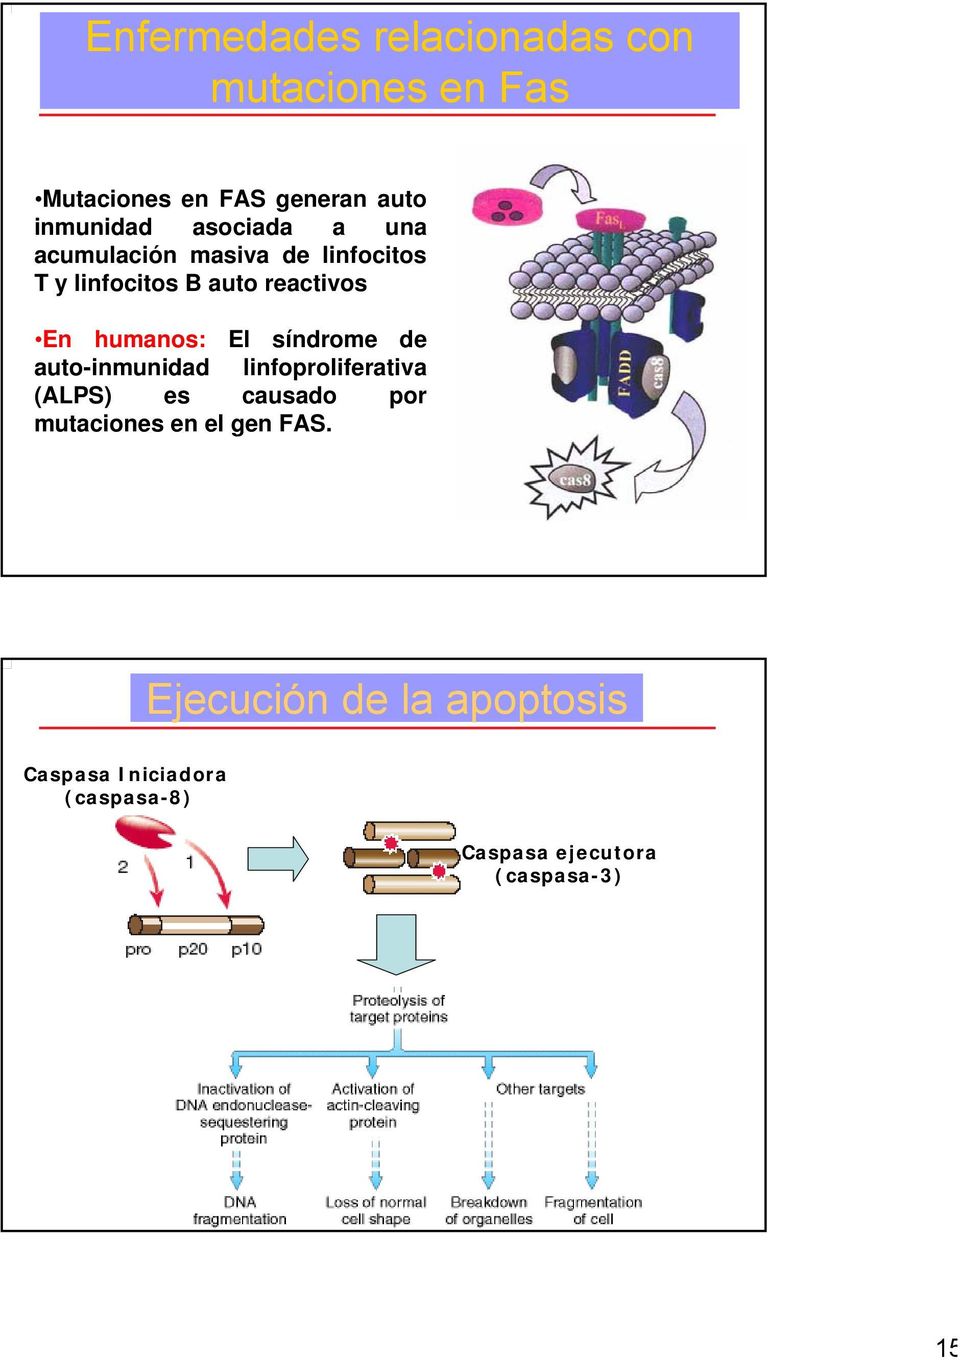 El síndrome de auto-inmunidad linfoproliferativa (ALPS) es causado por mutaciones en el gen